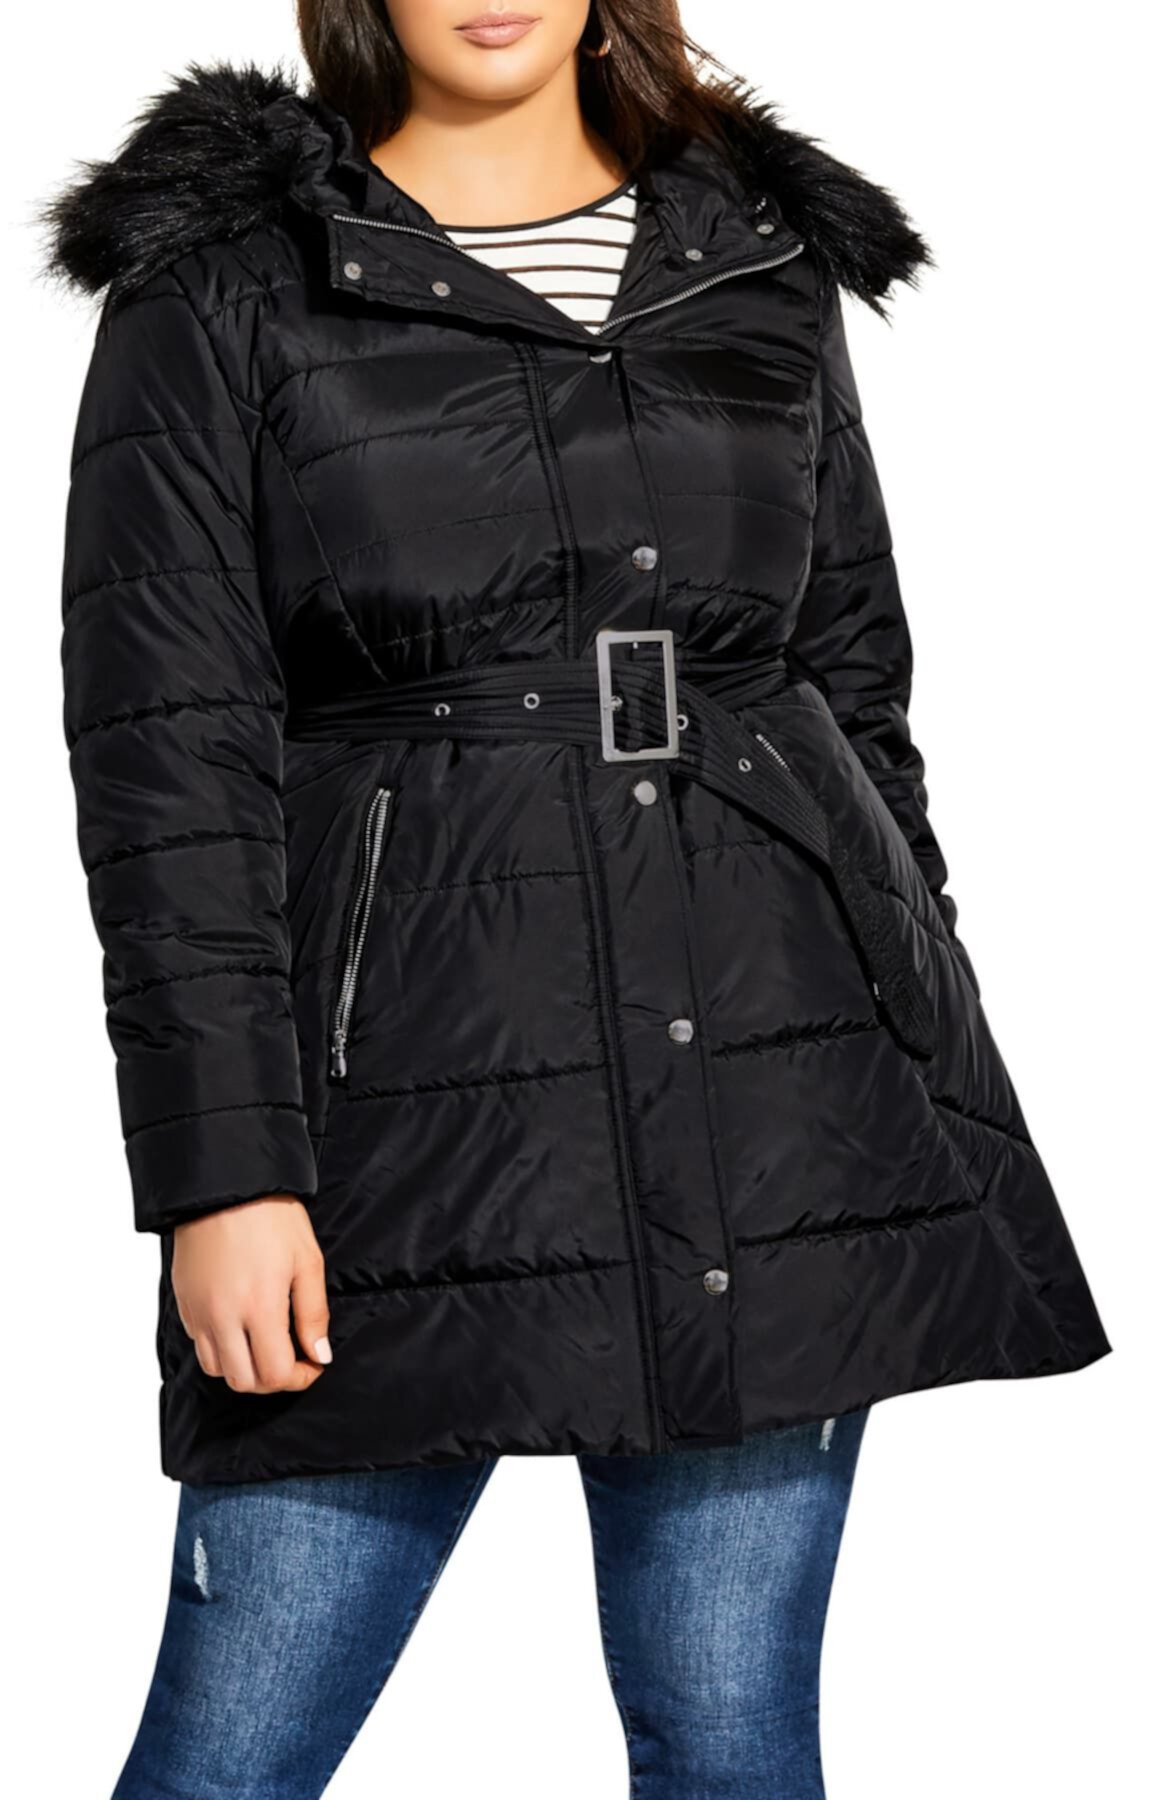 Puffa Съемное пальто с капюшоном из искусственного меха City Chic